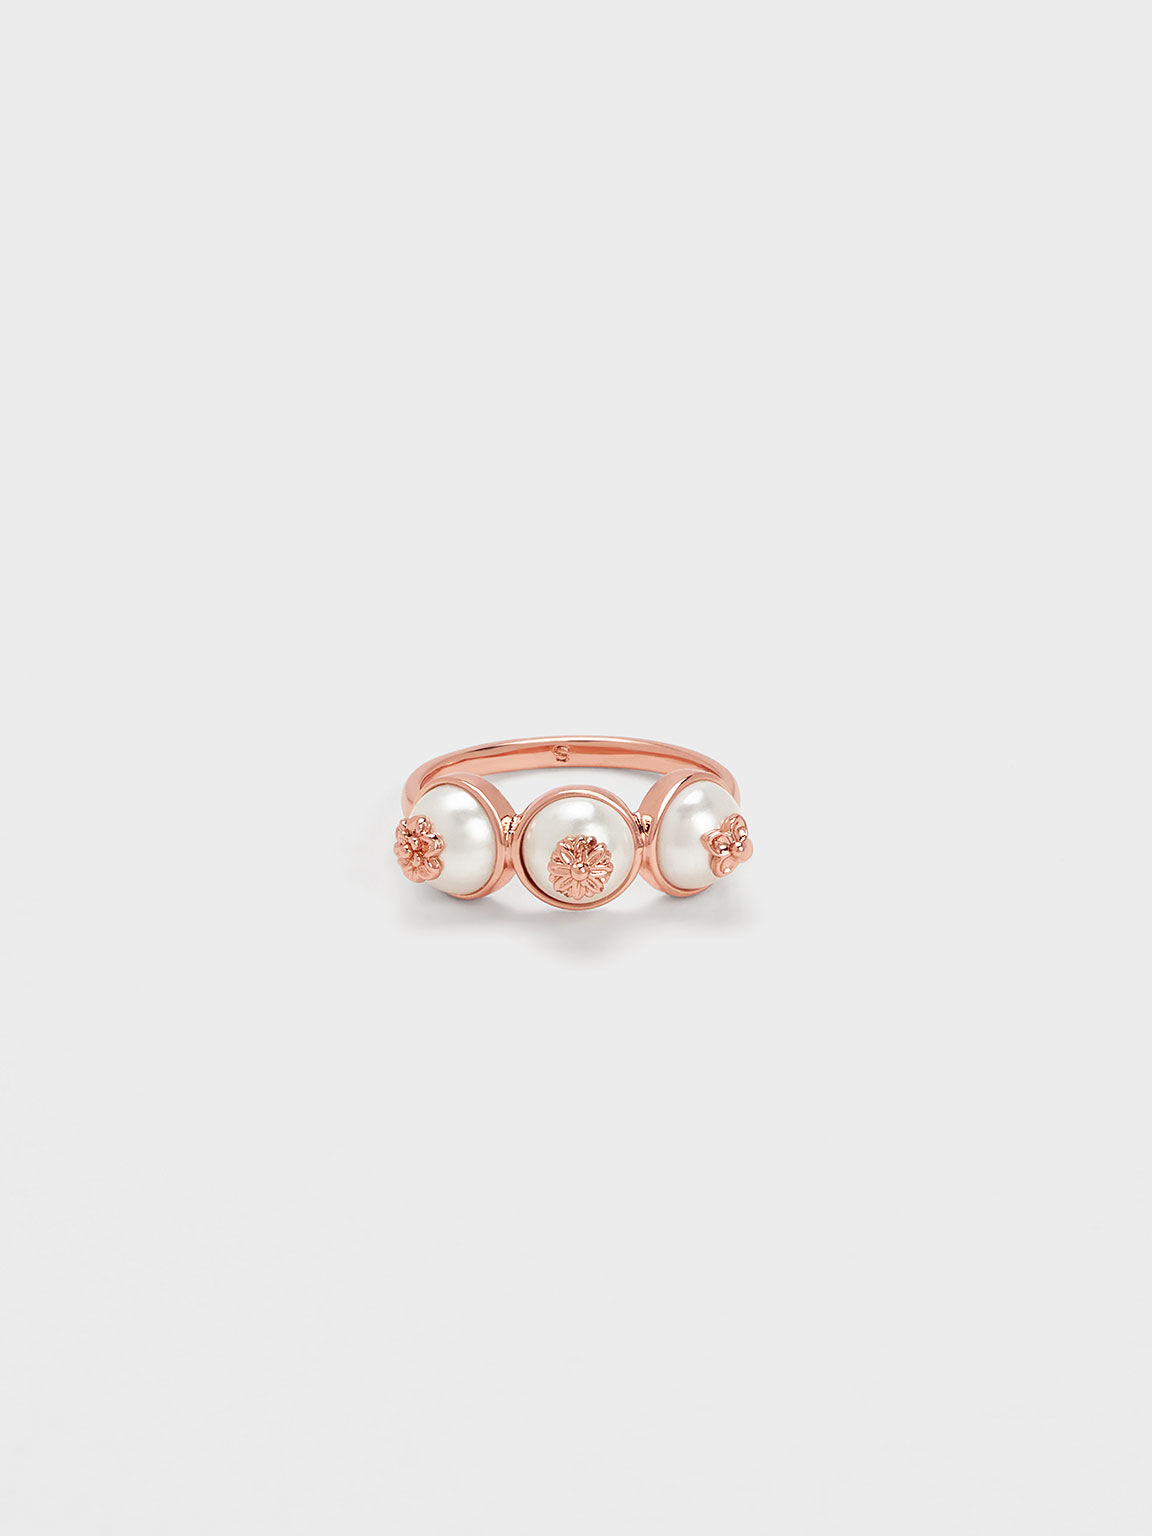 Flower-Embellished Triple Pearl Ring, Rose Gold, hi-res